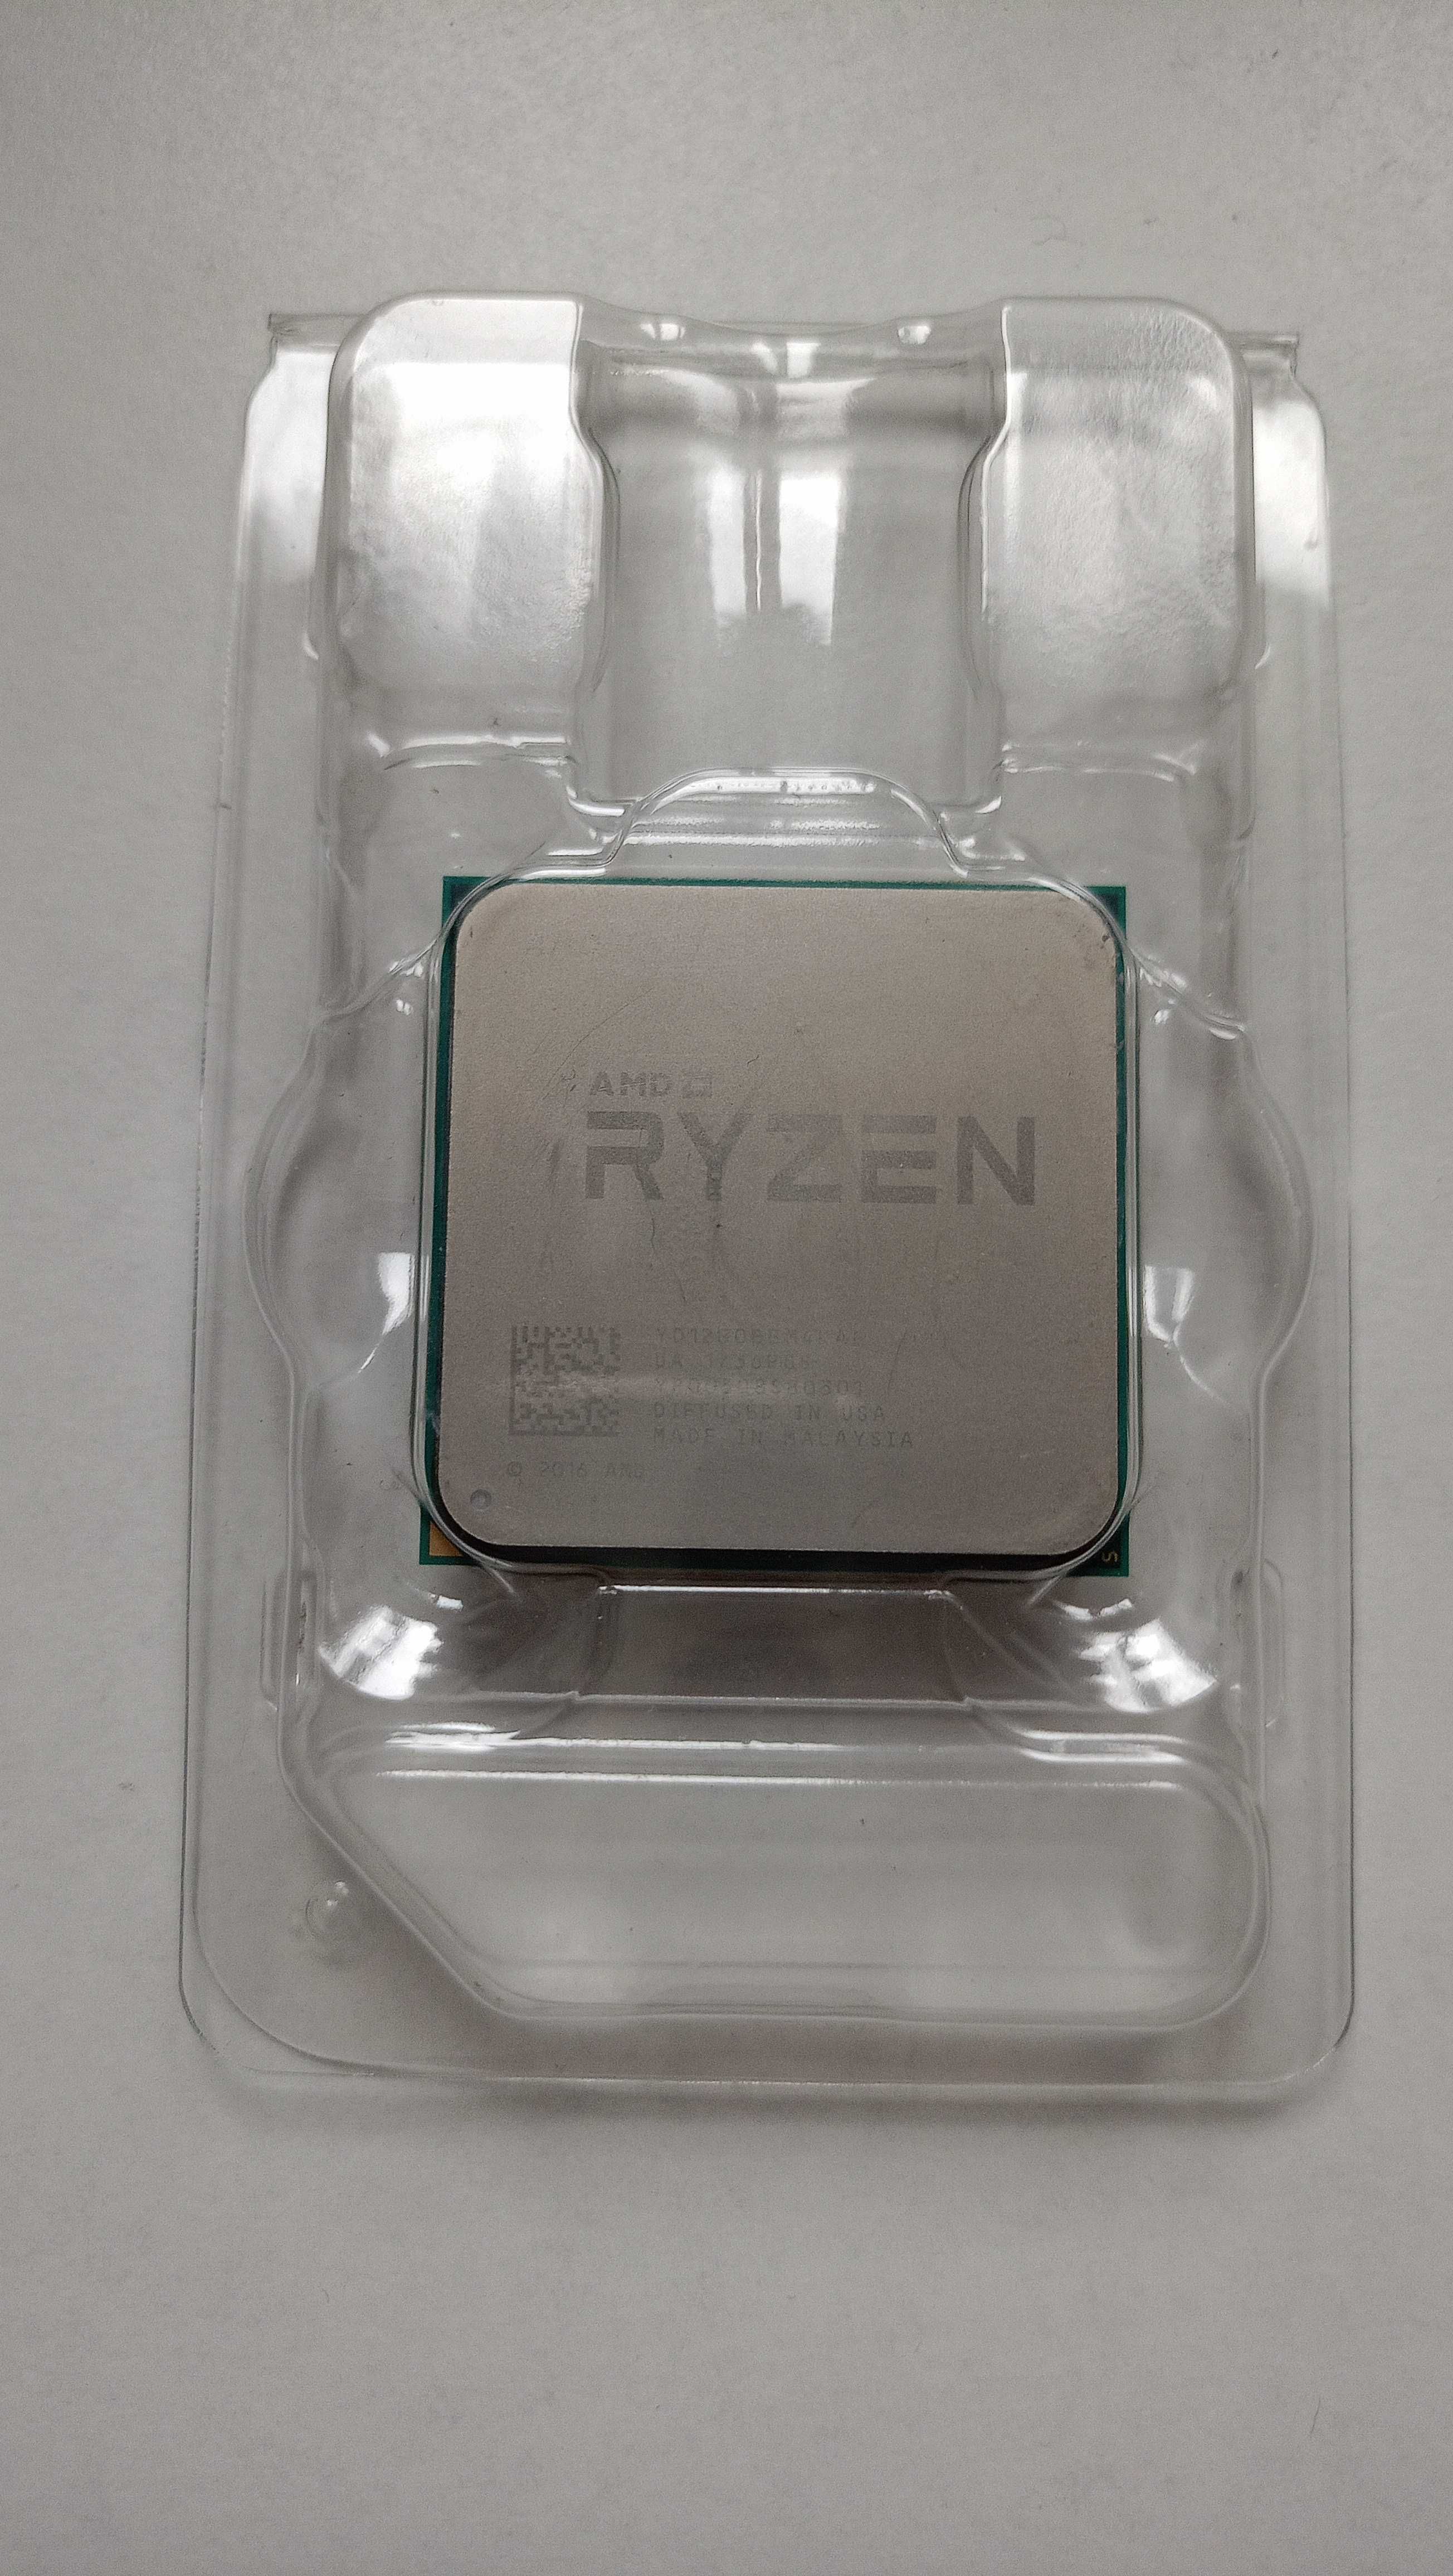 Procesor AMD Rayzen 3 1200AF BOX